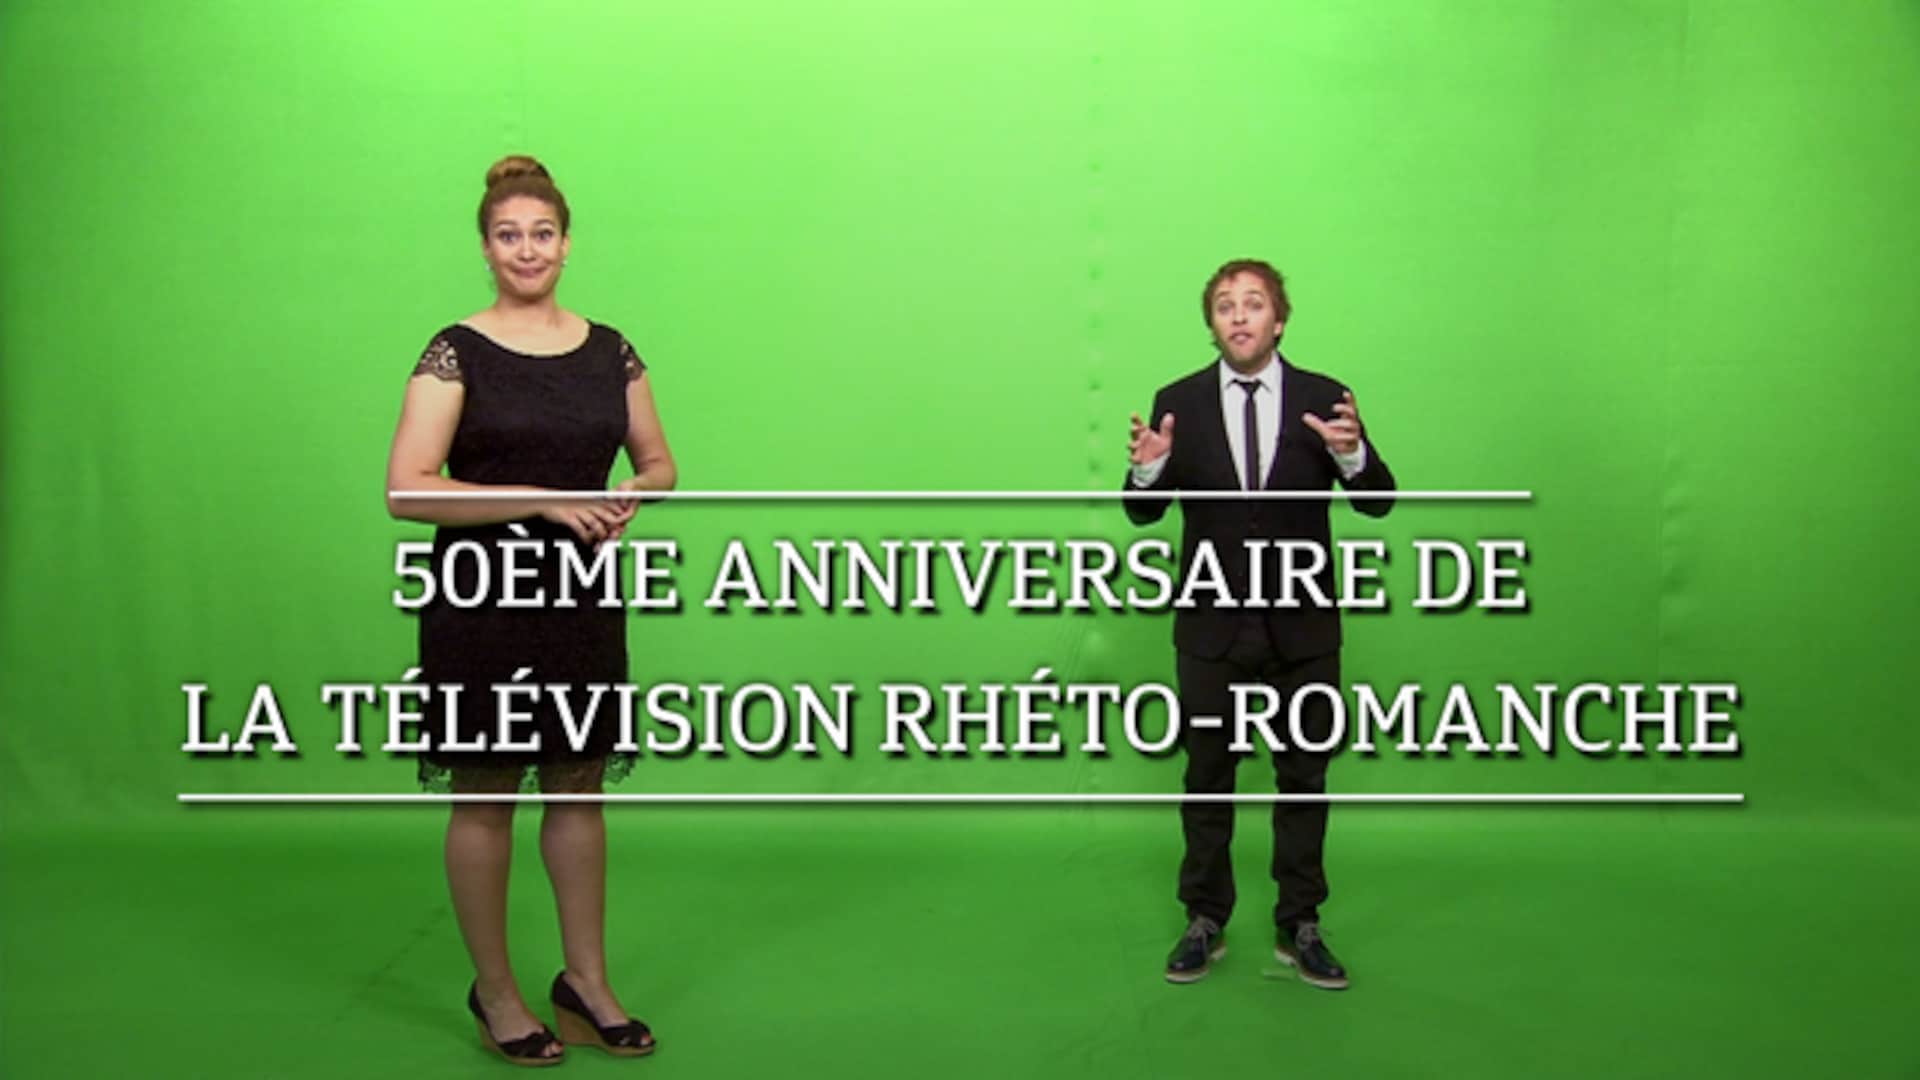 50ème anniversaire de la télévision rhéto-romanche